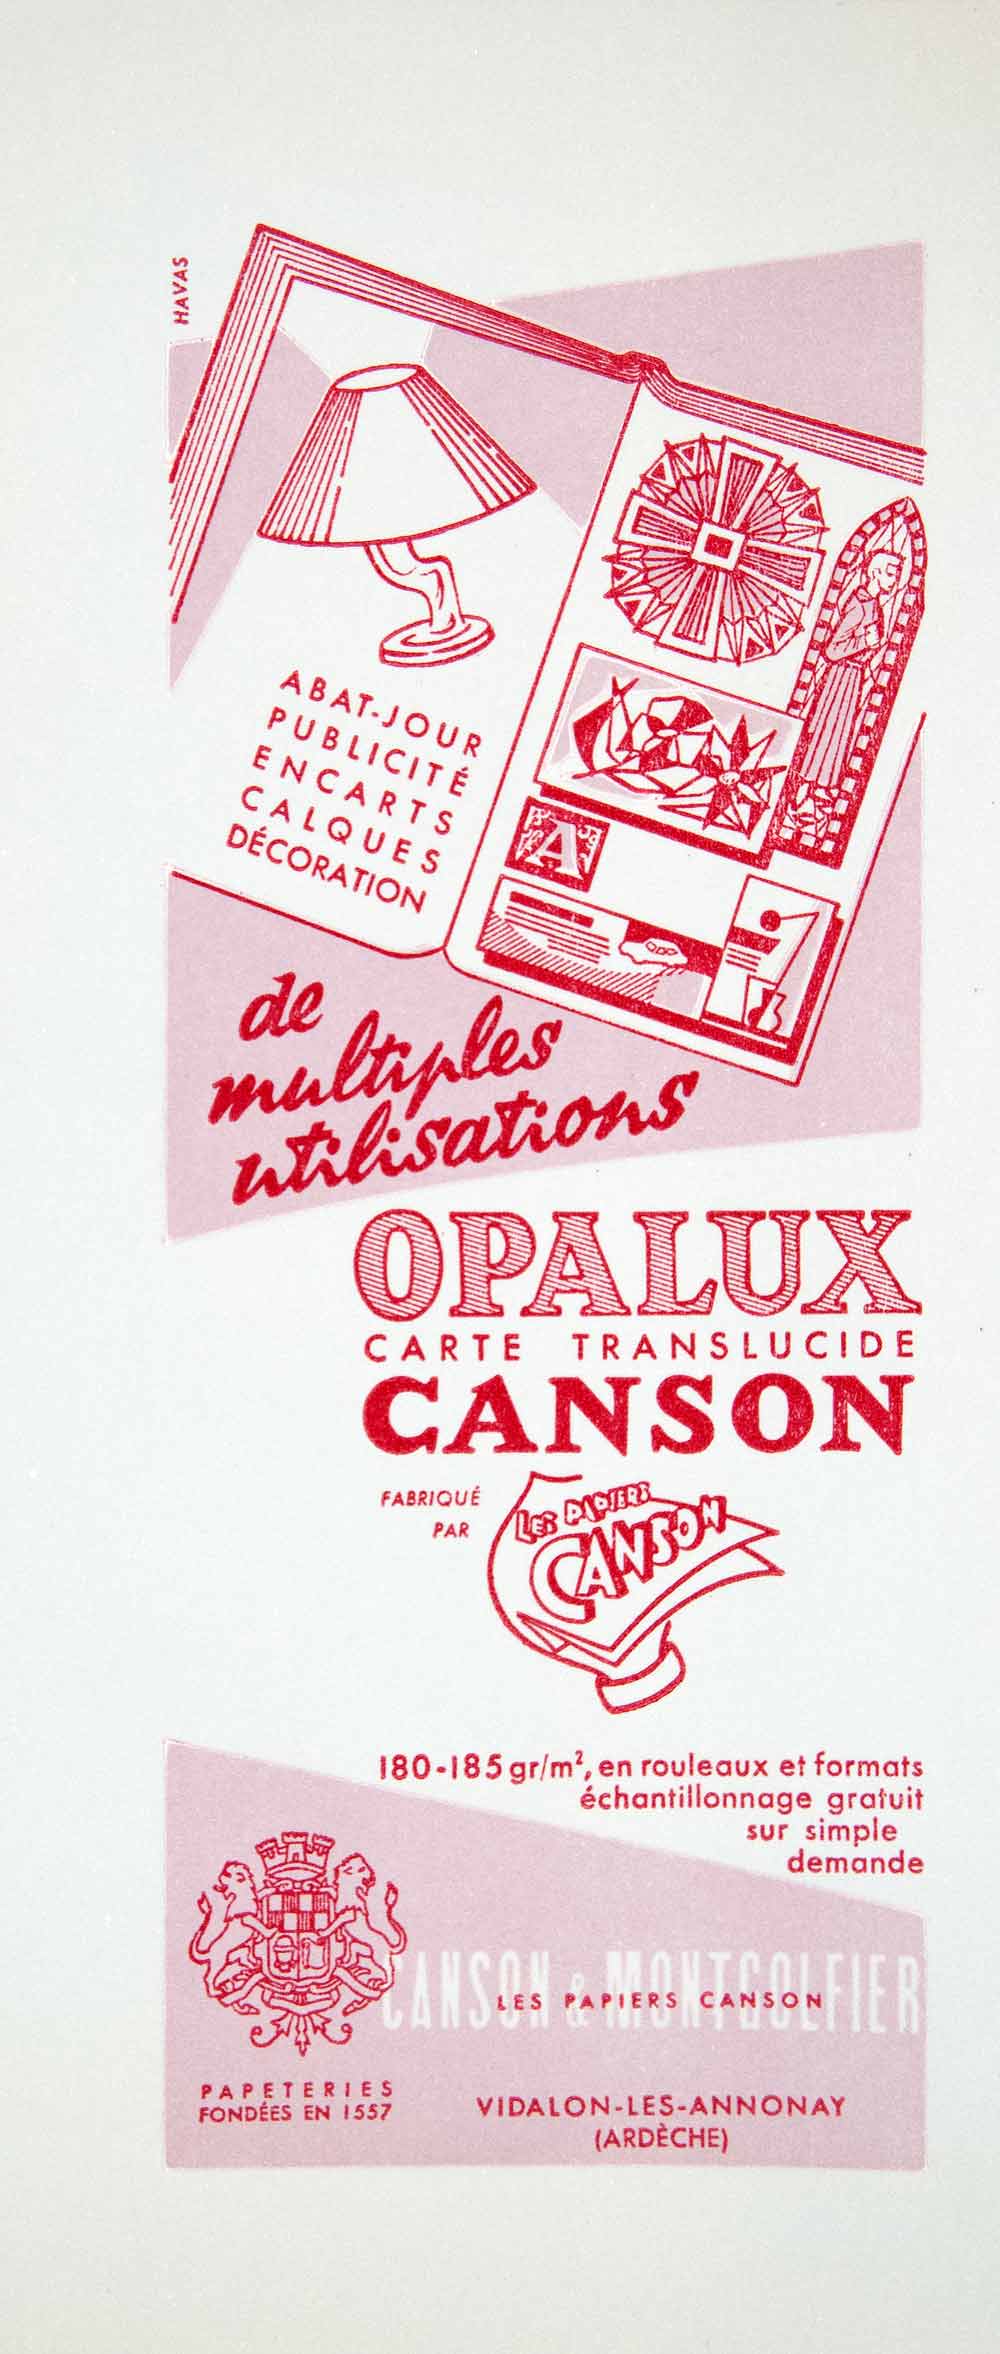 1959 Lithograph Ad Translucent Opalux Canson Montgolfier Paper Acetate VENA2